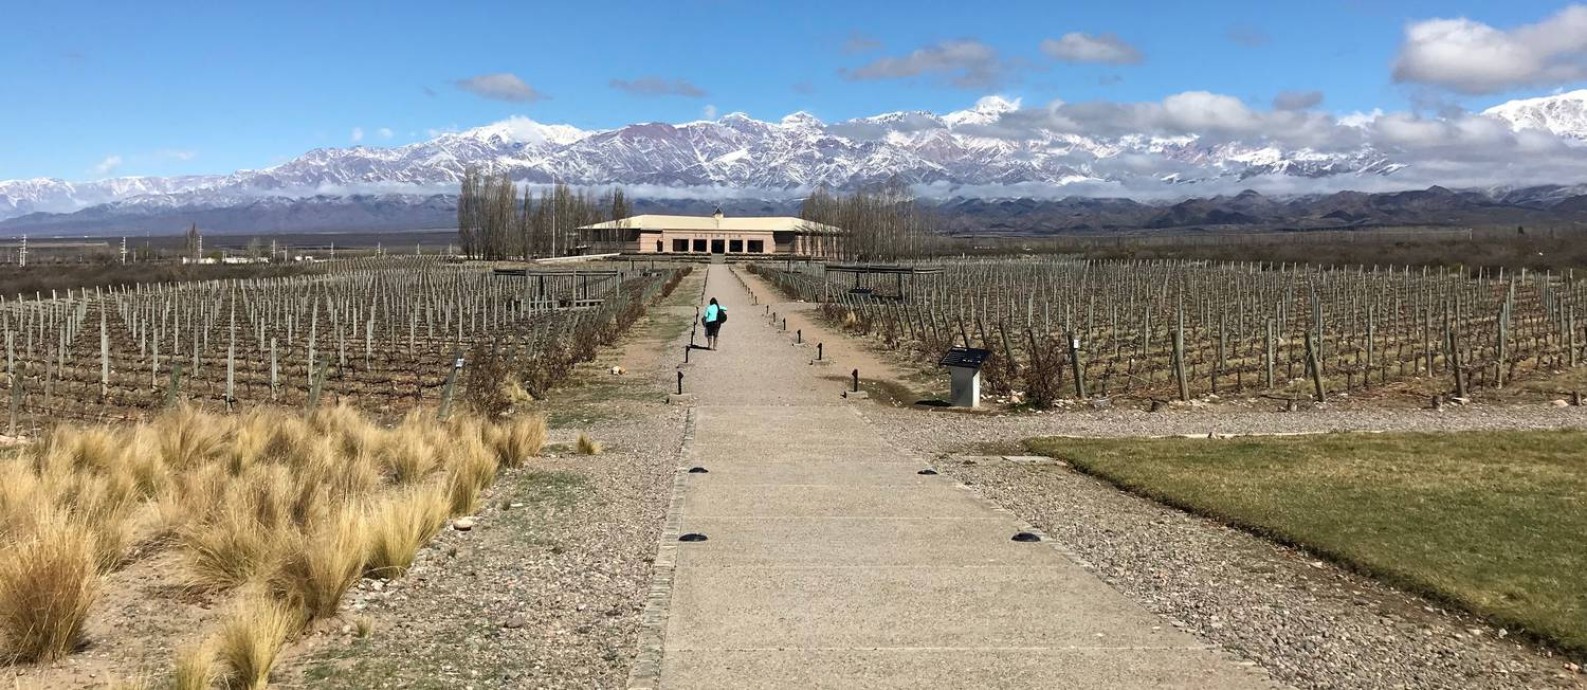 Aos pés da cordilheira. A vinícola Salentein está entre os destaques na rota dos vinhos de Mendoza. A região oferece ainda boa gastronomia e produção de azeite de oliva Foto: Janaína Figueiredo